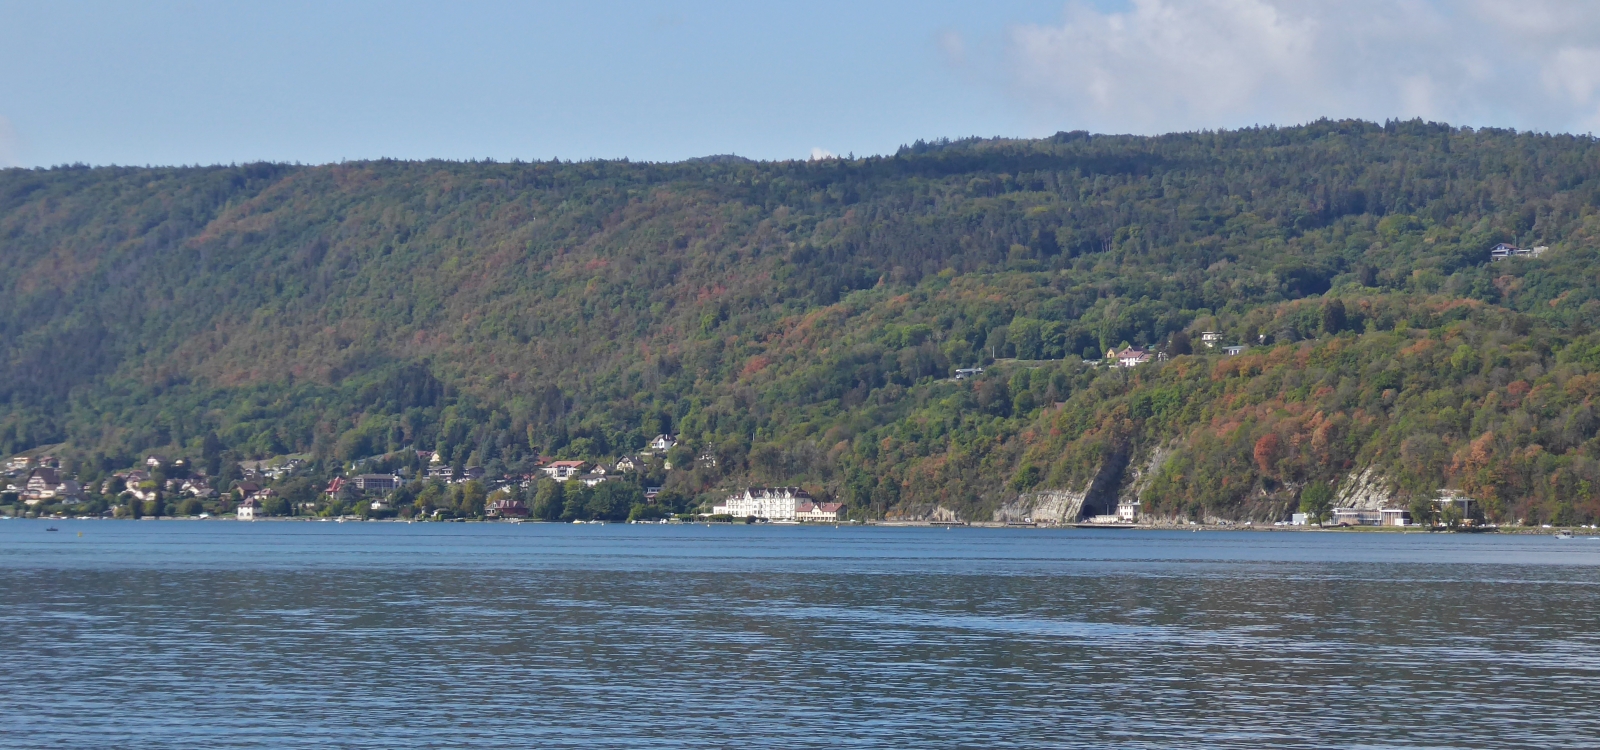 Blick über den See von Annecy auf den herbstfarblichen Wald an den Berghängen. 09.2022